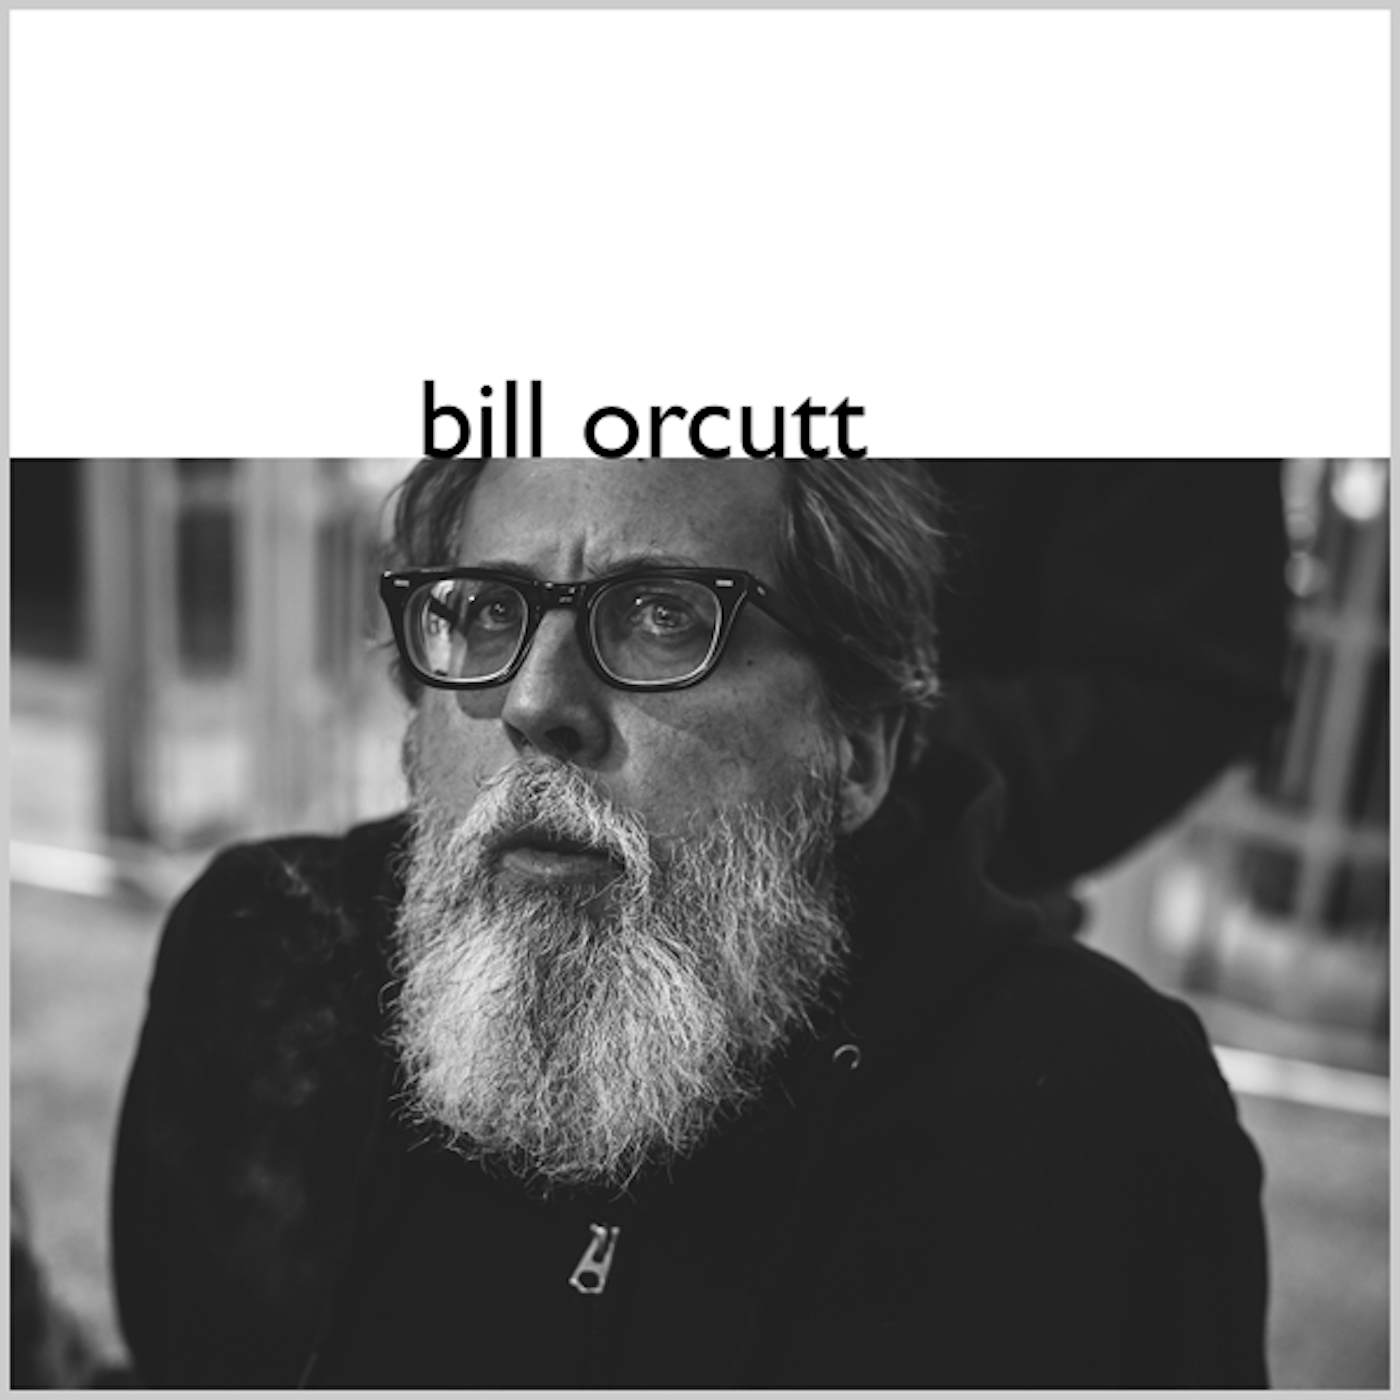  BILL ORCUTT Vinyl Record